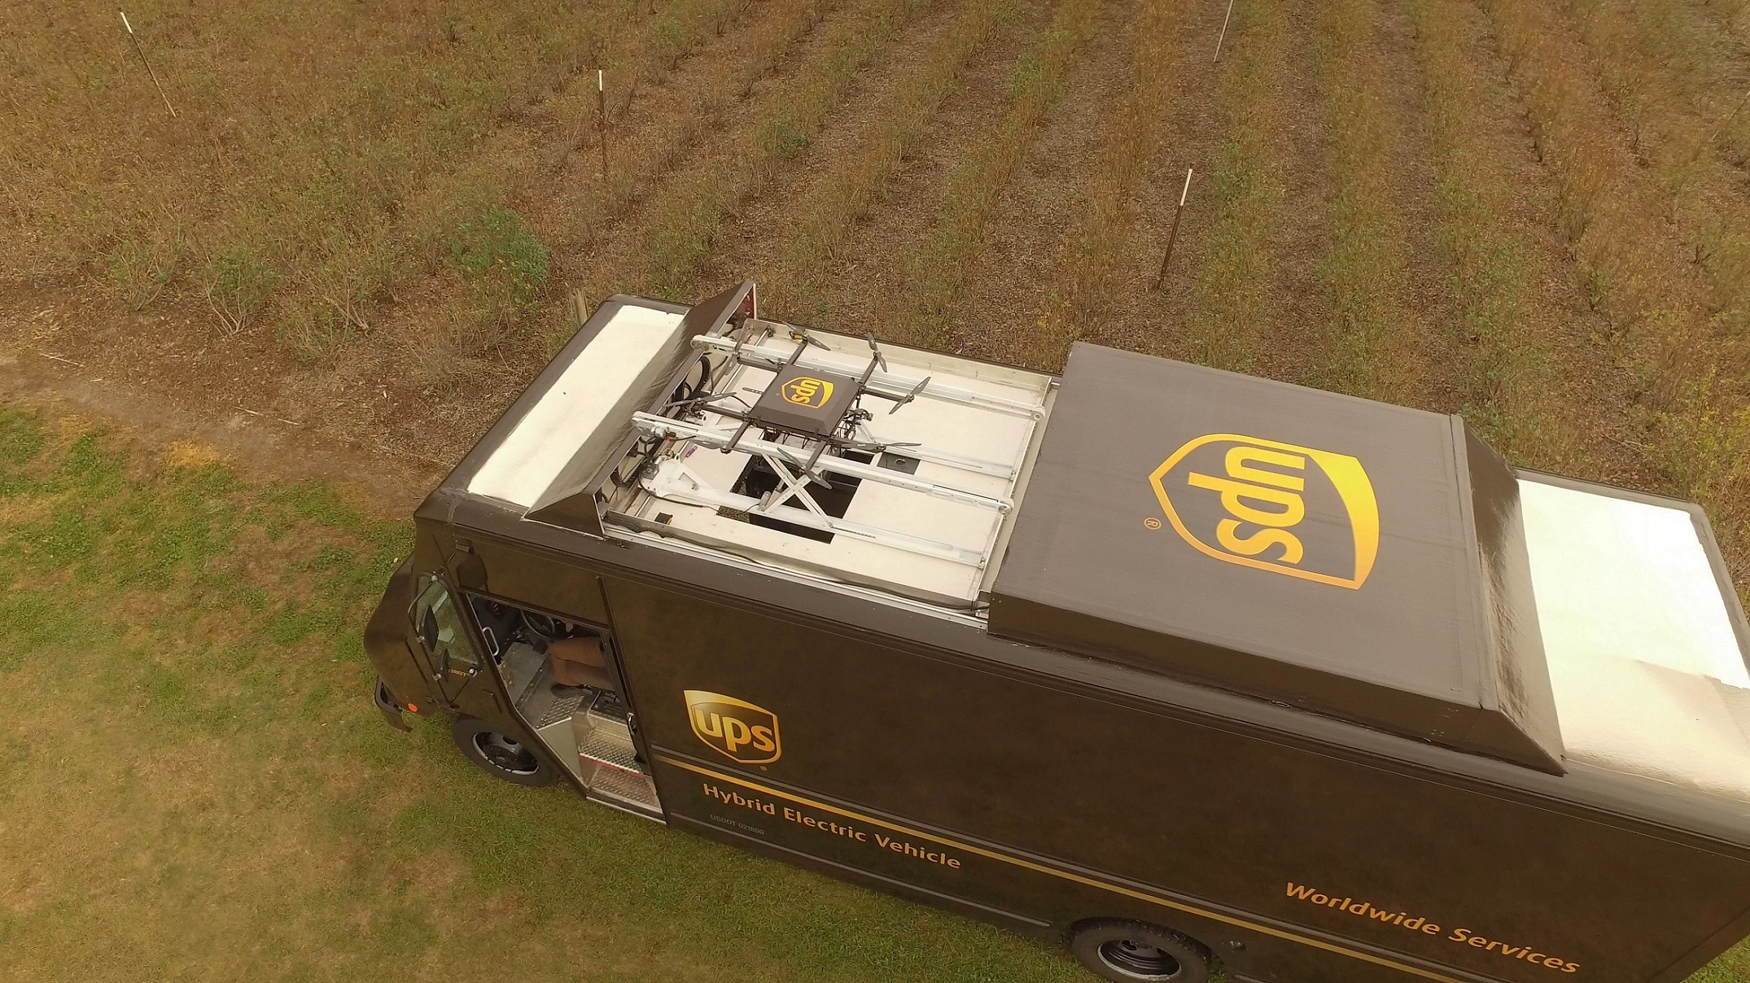 En la ltima prueba UPS ha colaborado con el fabricante de drones lanzados desde camiones, Workhorse Group